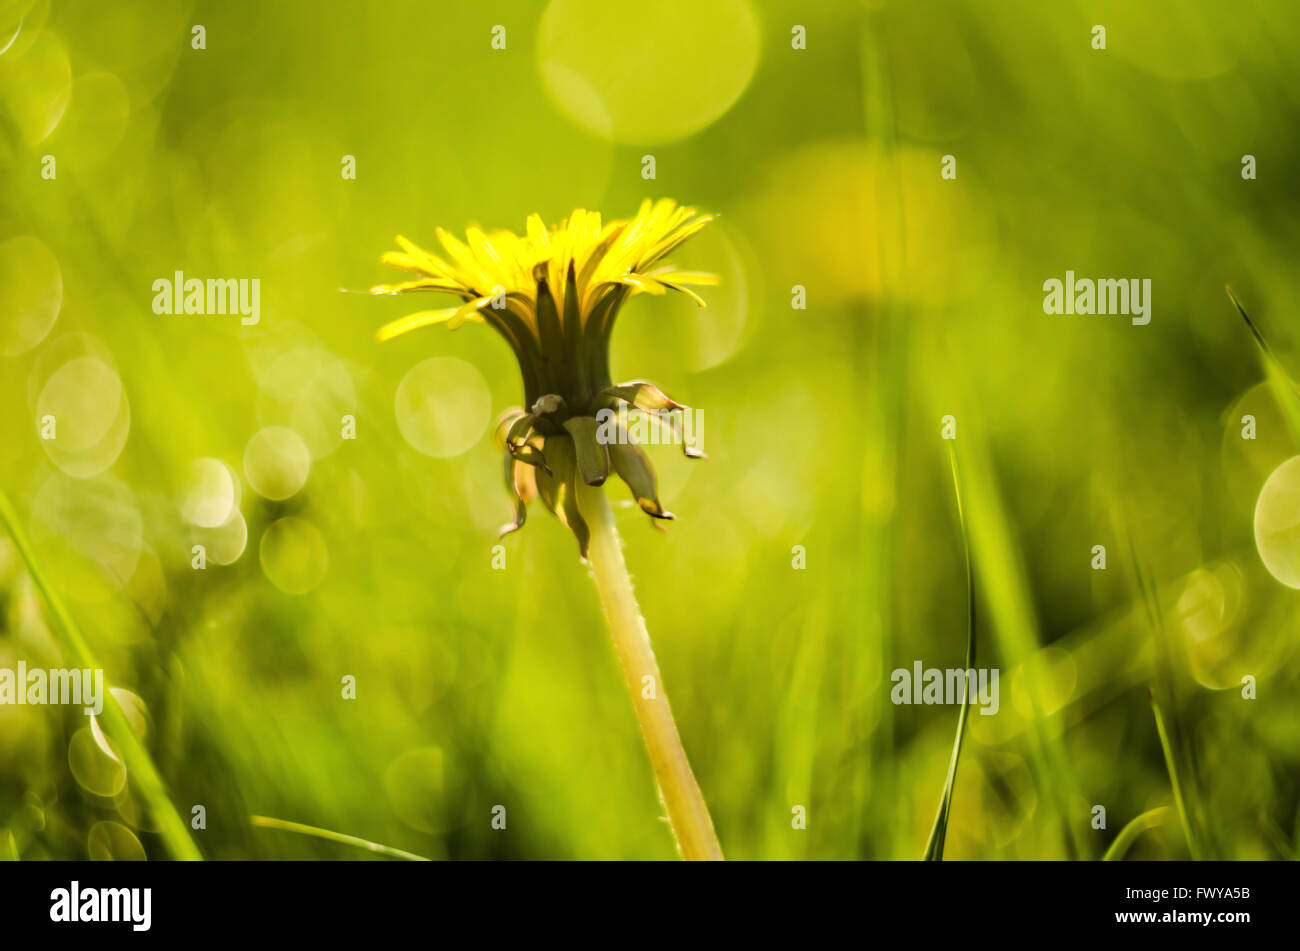 Détail de fleurs de pissenlit jaune fermé isolé sur fond vert flou. Banque D'Images